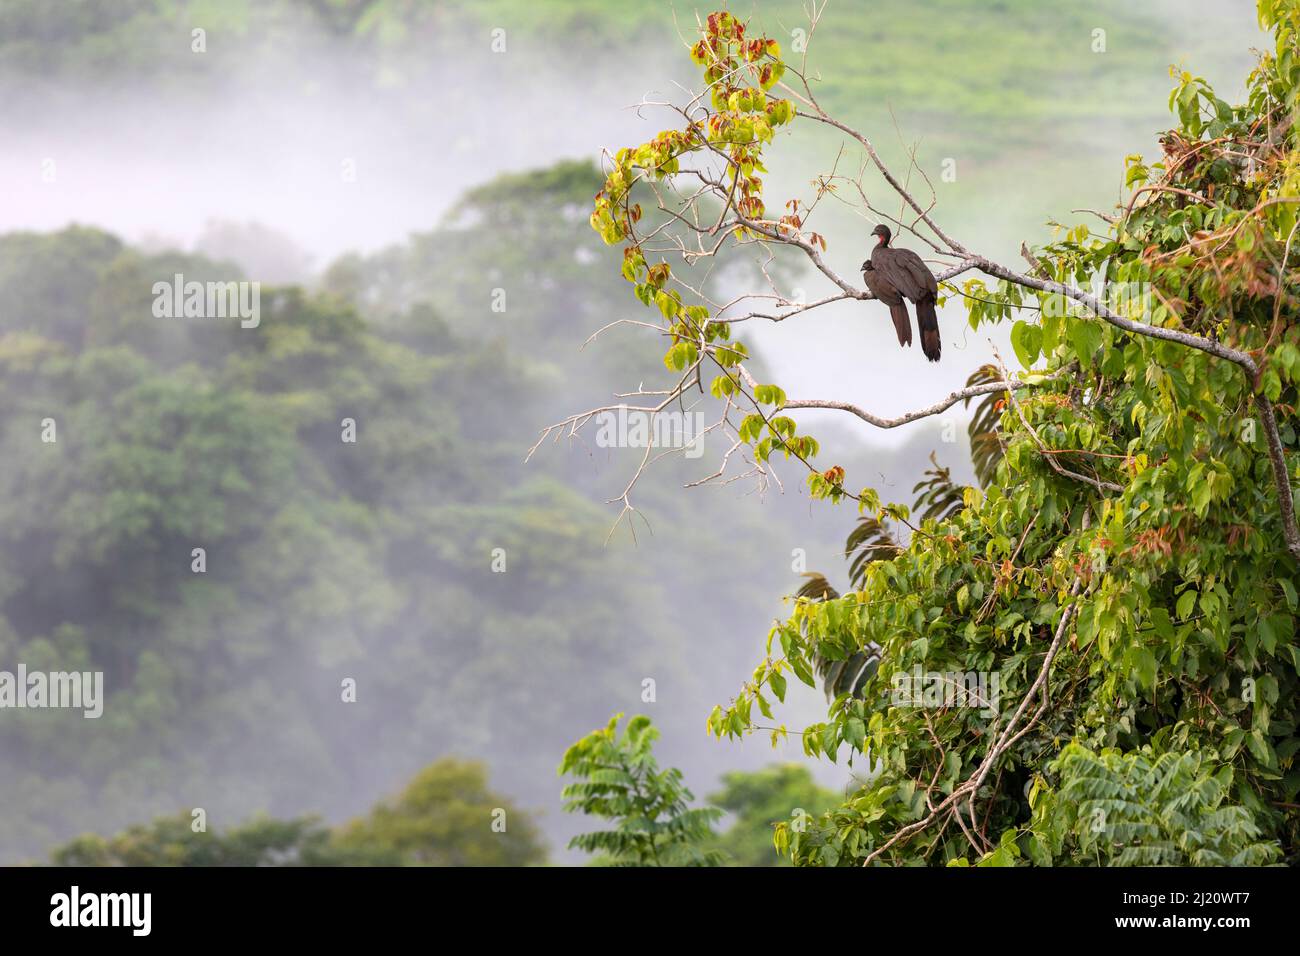 Pguan crestado (Pénelope purpurascens) con jóvenes en un árbol del Parque Nacional Carara, Tarcoles, Costa Rica Foto de stock